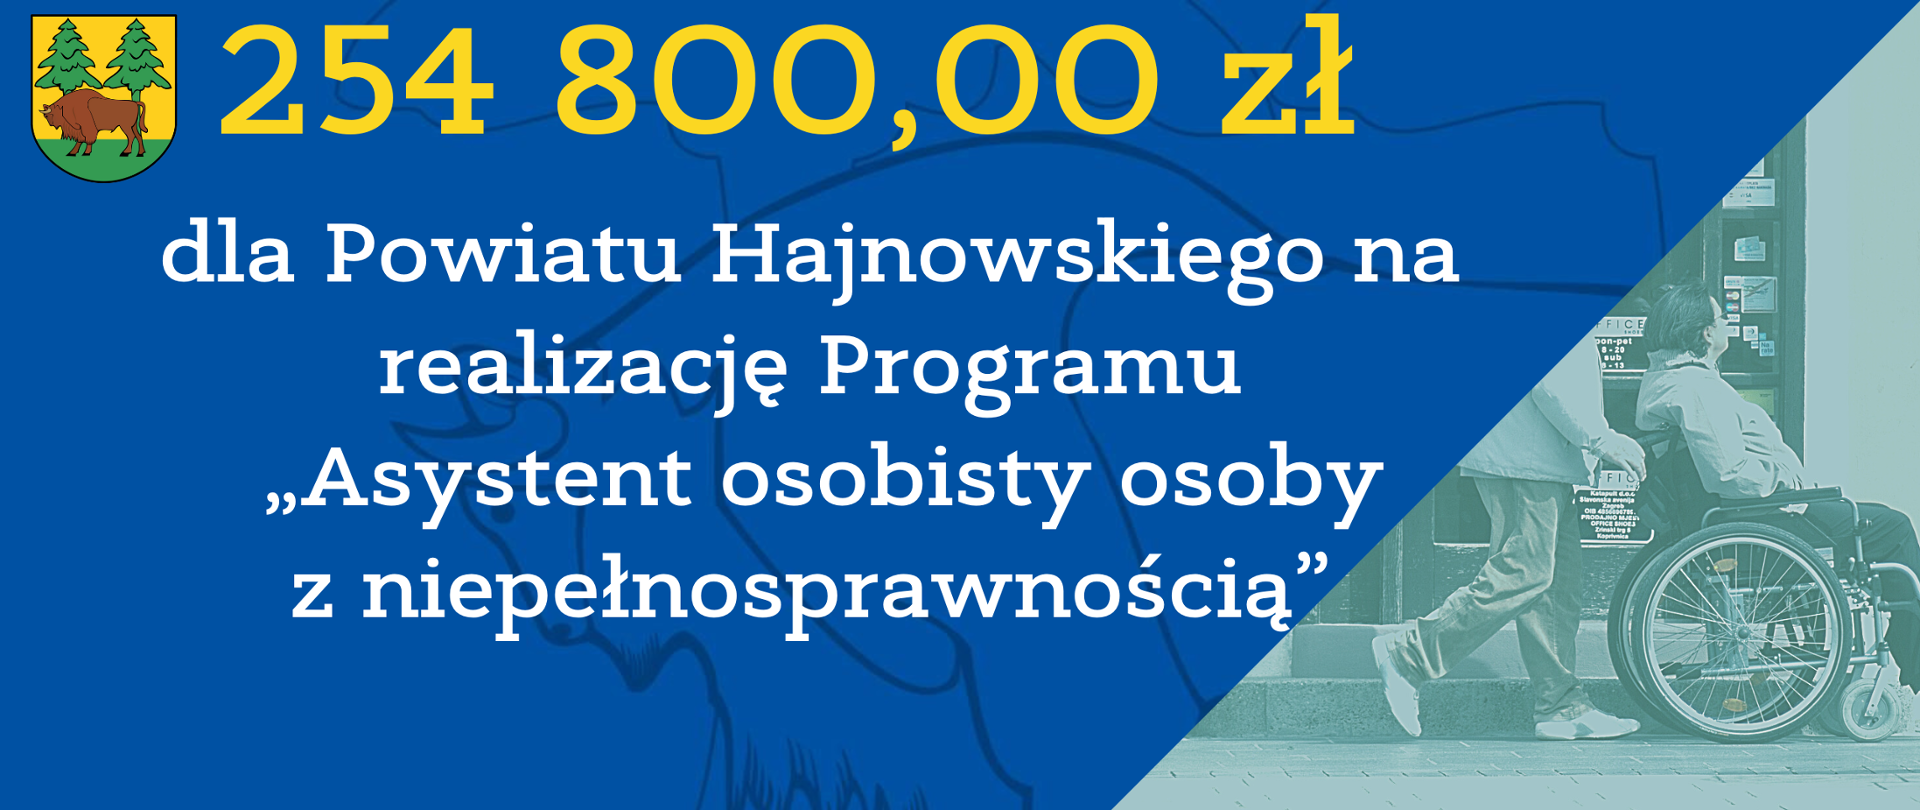 254 800,00 zł dla Powiatu Hajnowskiego na realizację Programu „Asystent osobisty osób z niepełnosprawnością” 